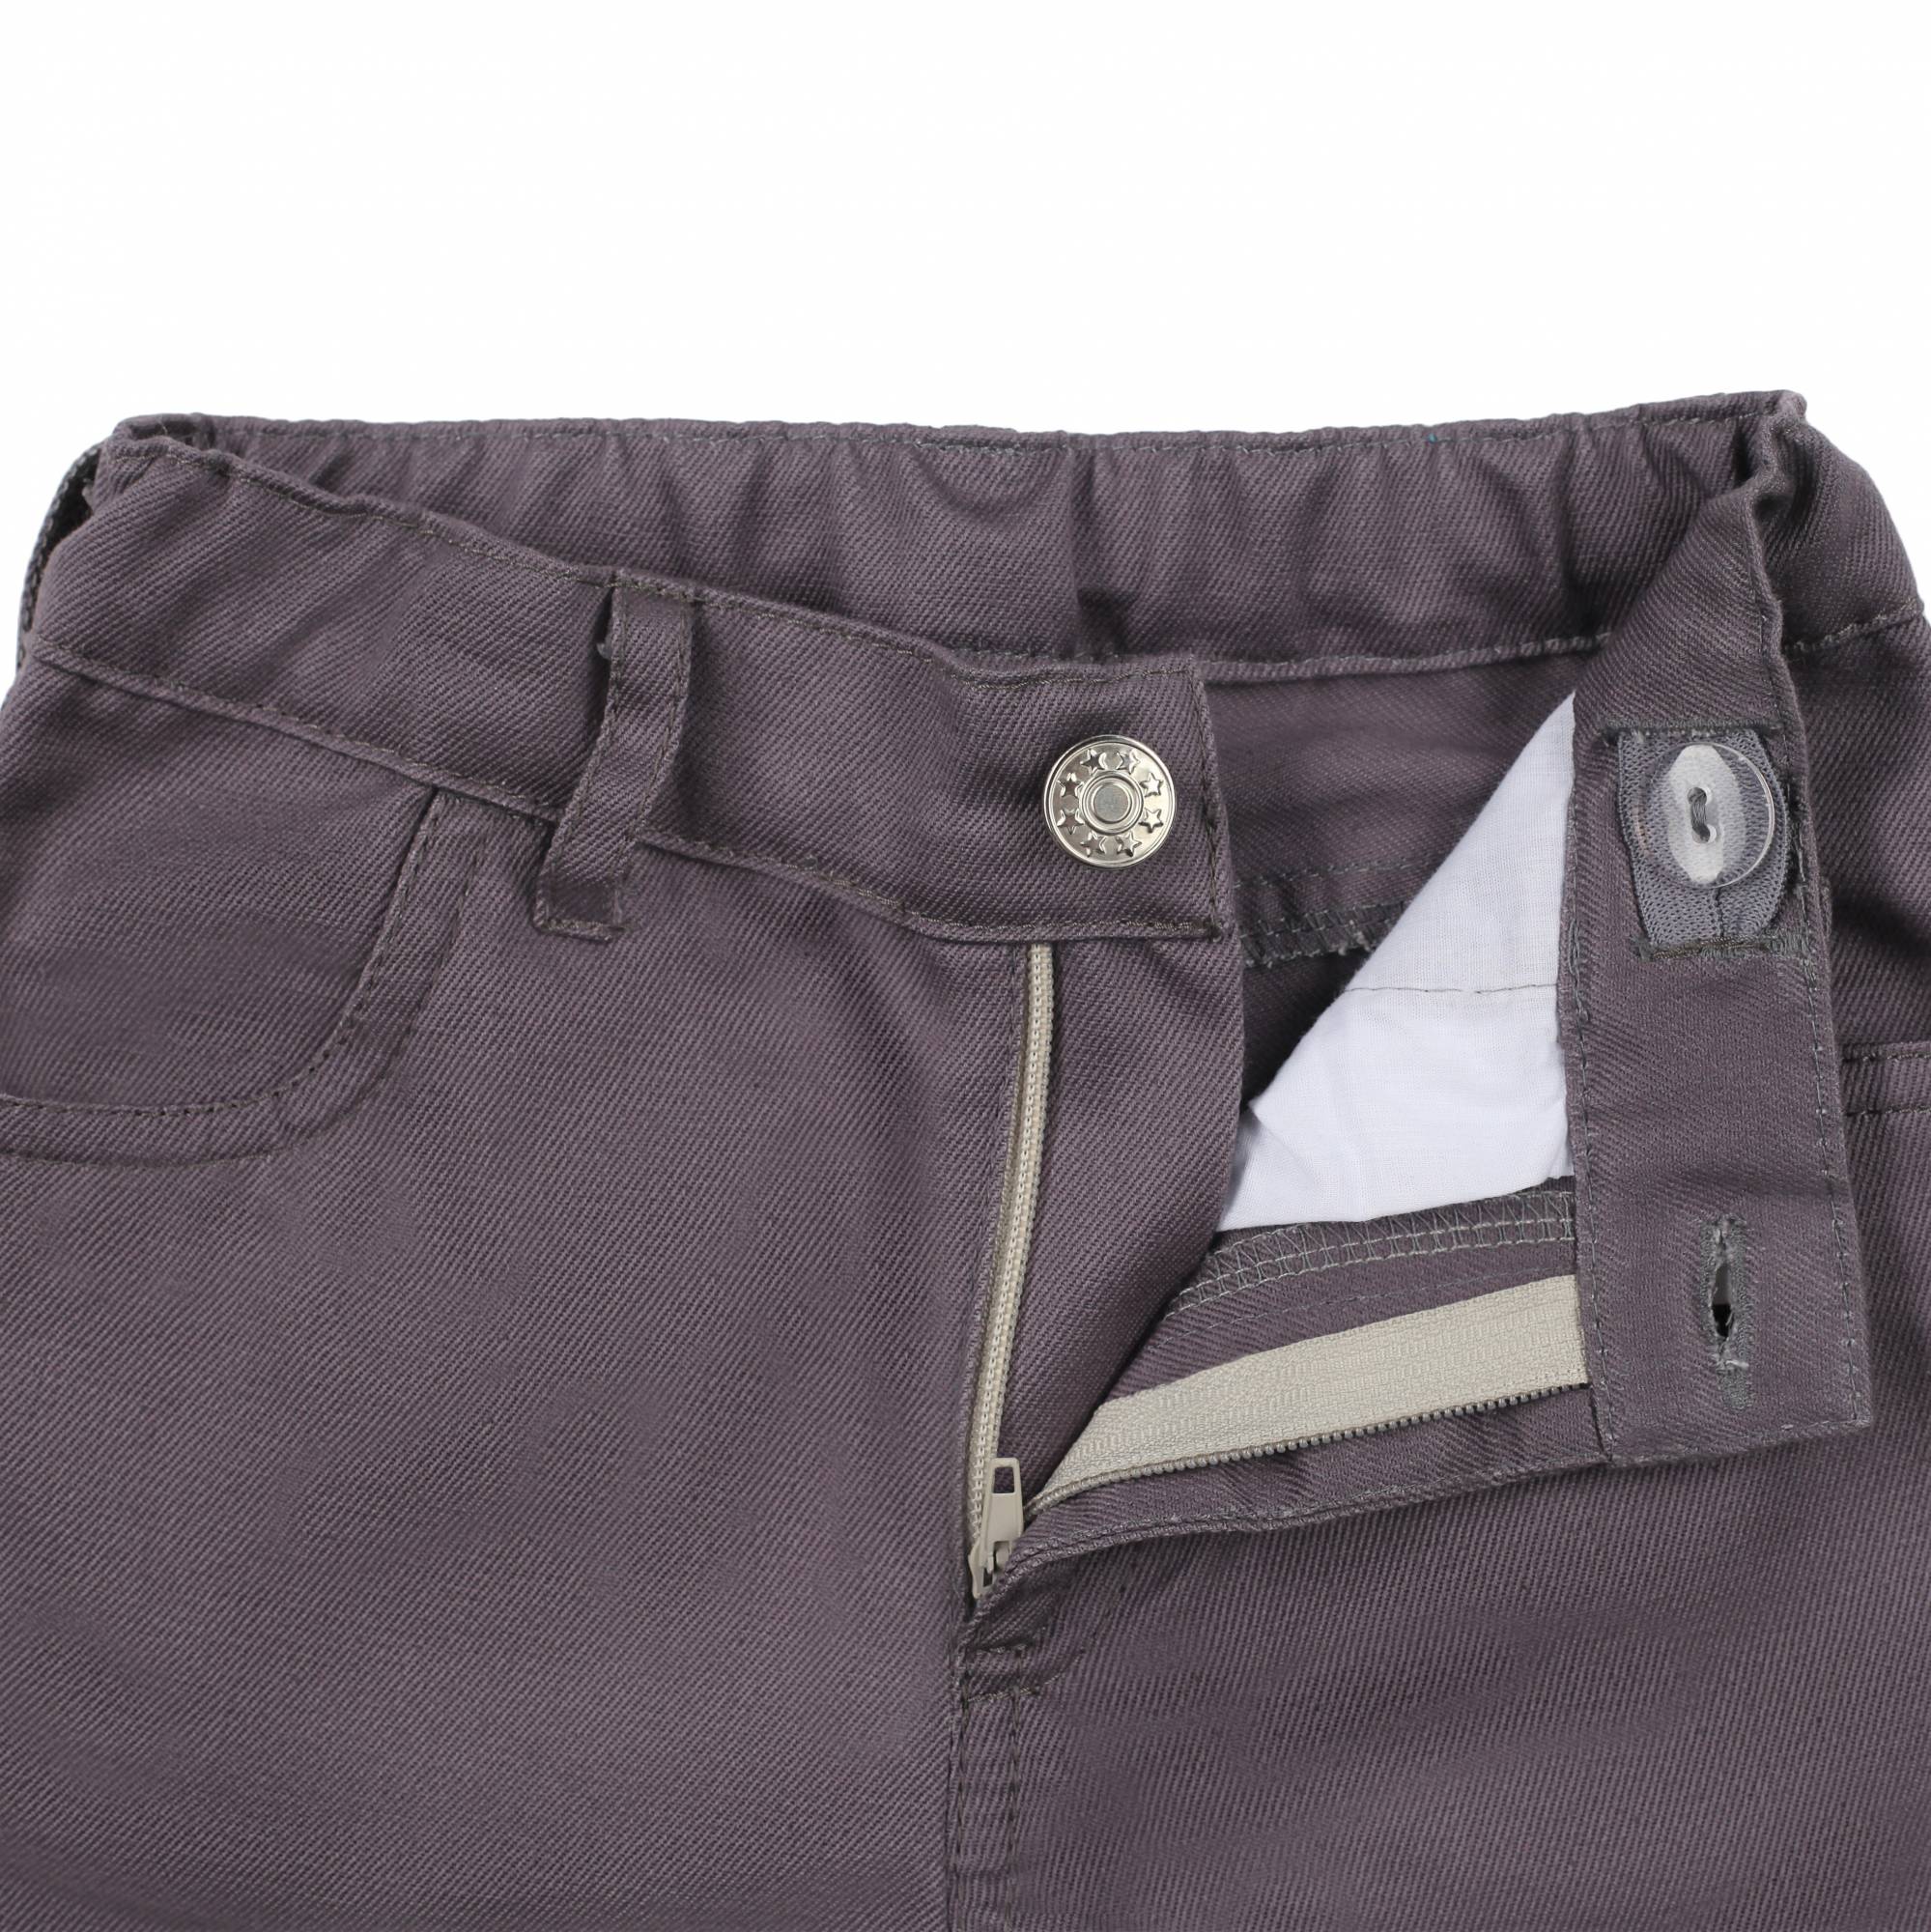 Твиловые брюки с флисовой подкладкой фото 2